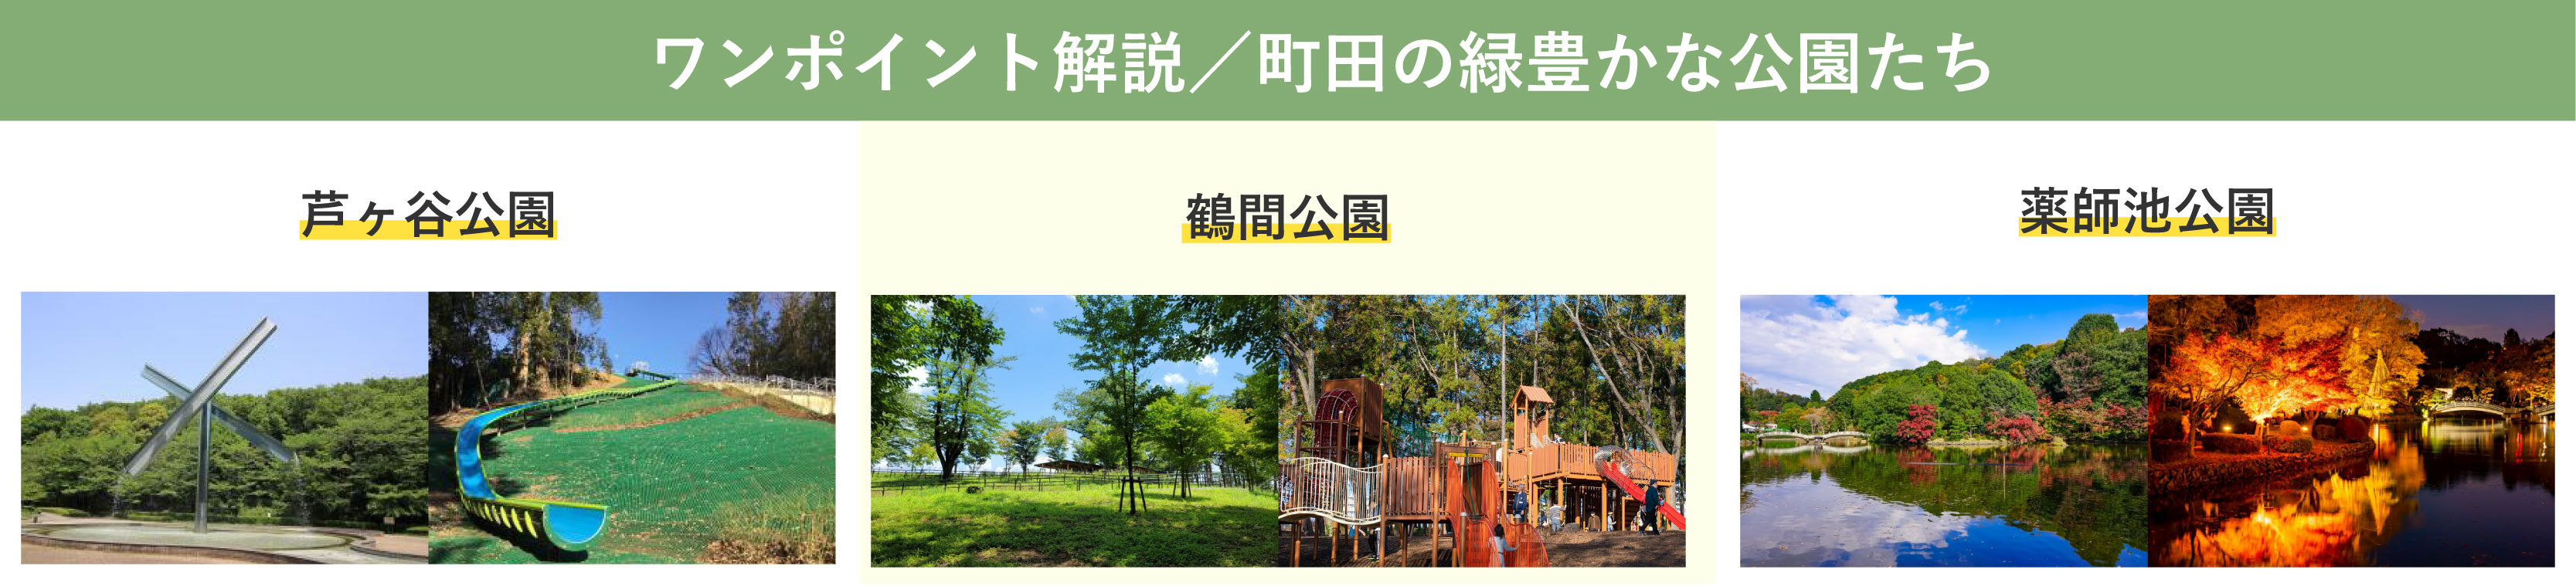 町田市の緑豊かな公園たち